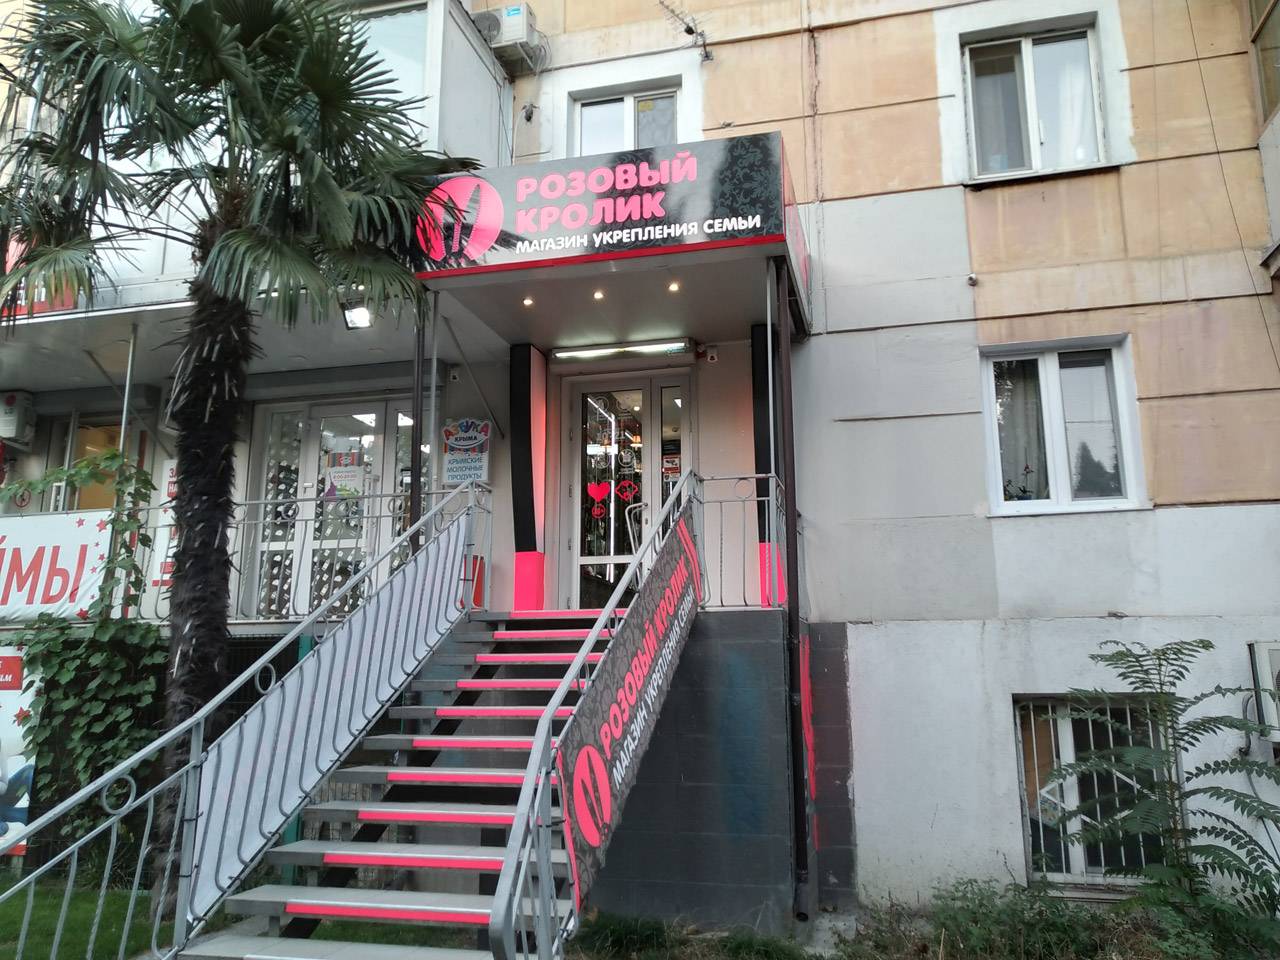 Секс-шоп «Розовый кролик» в Крыму